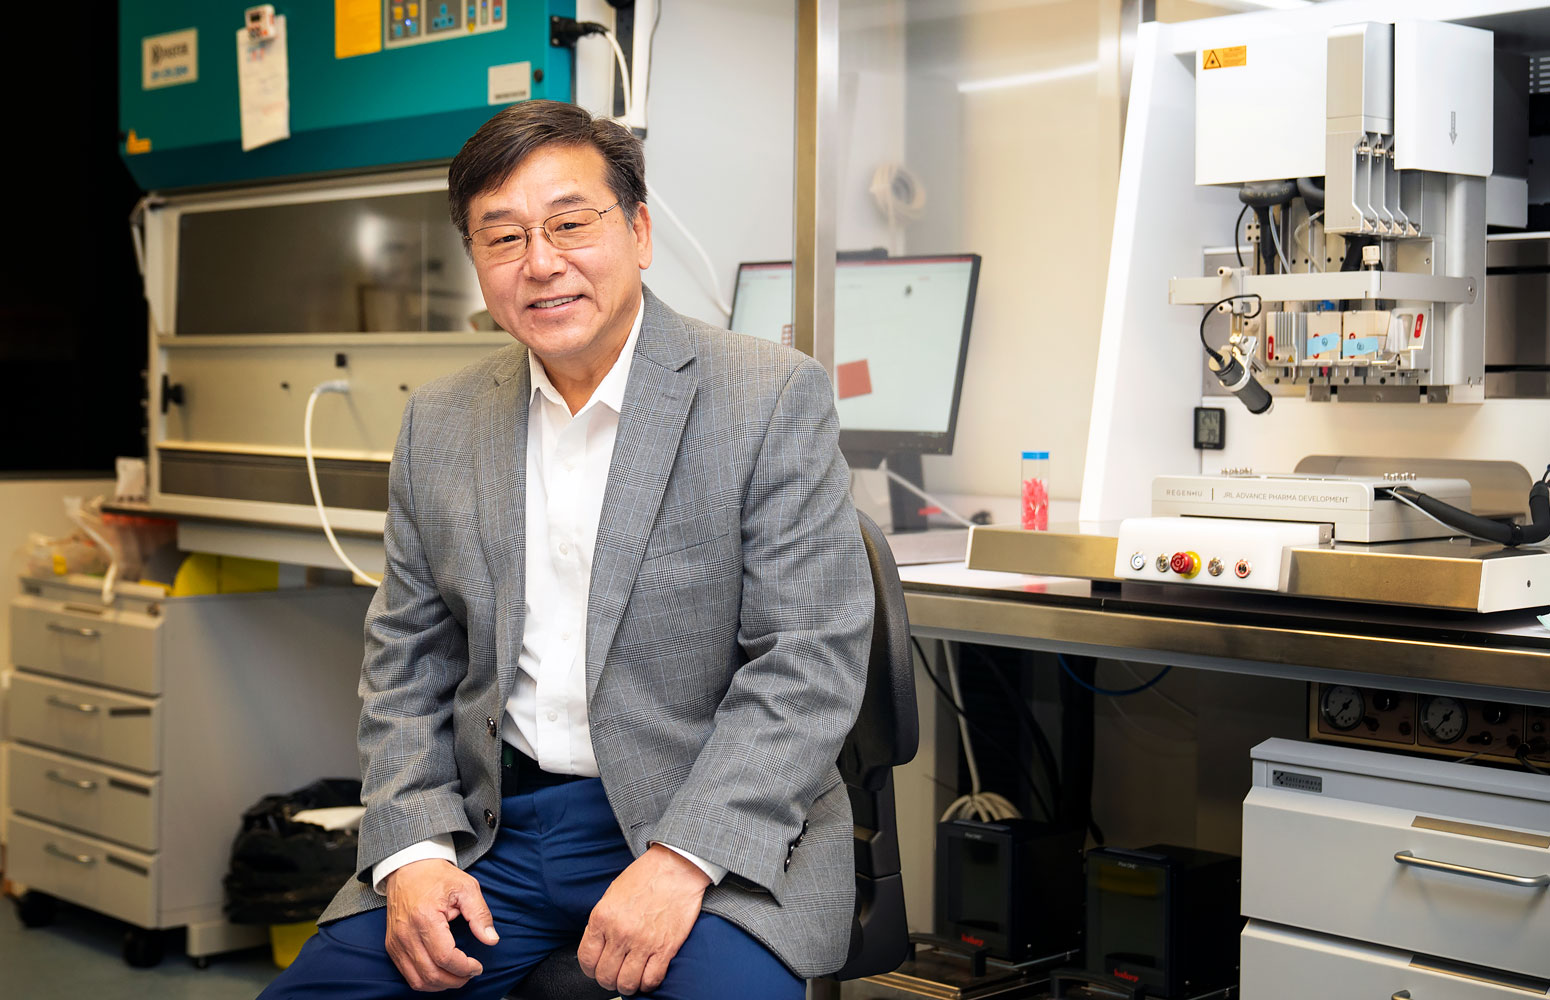 James J. Yoo impartió una conferencia en la Facultad de Farmacia sobre el desarrollo de tecnologías de apoyo para abordar las brechas traslacionales en la medicina regenerativa. Su visita ha permitido materializar una colaboración internacional entre el grupo de investigación NanoBioCell y el de Wake Forest.